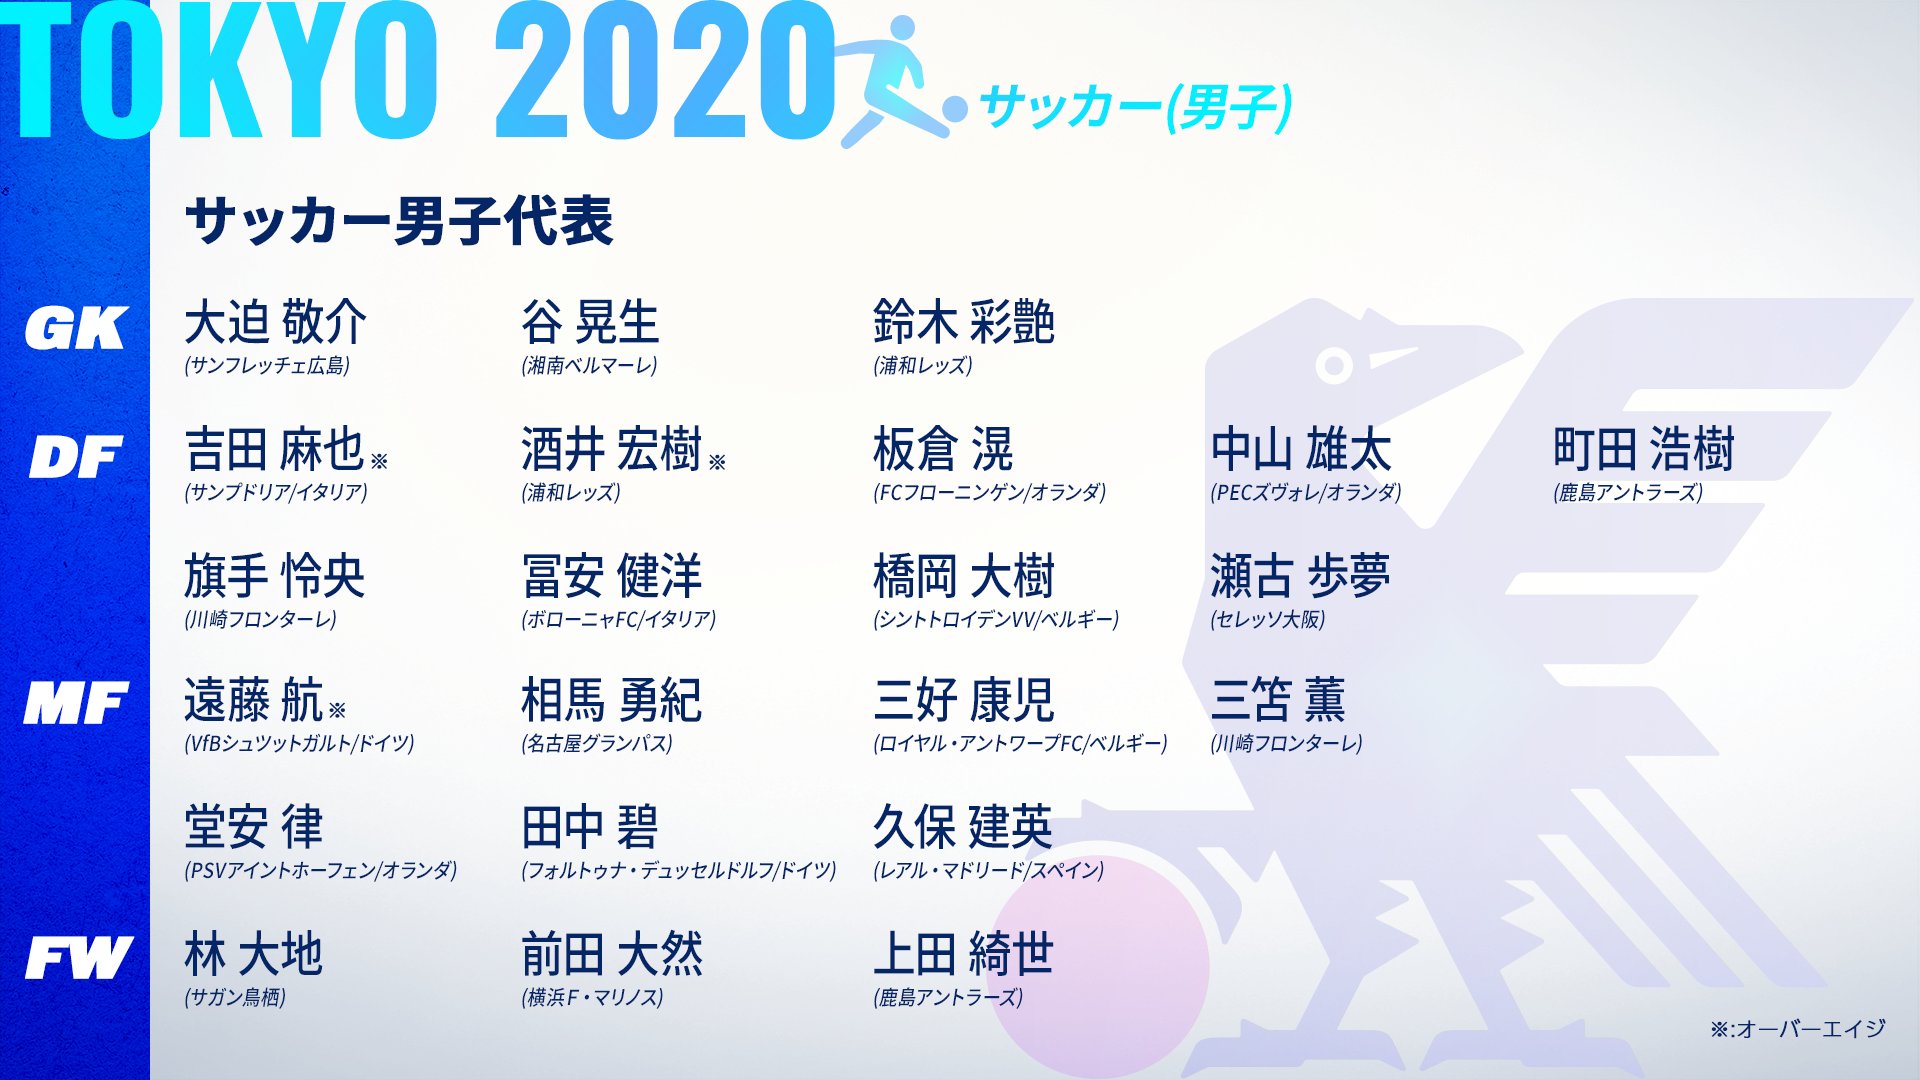 サッカー日本代表 3 24 Vsオーストラリア代表 サッカー競技 男子 の登録メンバーについて Ioc発表の通り 東京オリンピックに限り登録メンバー18名を バックアップ4名を含む22名から試合ごとに選出するルールが適用となります